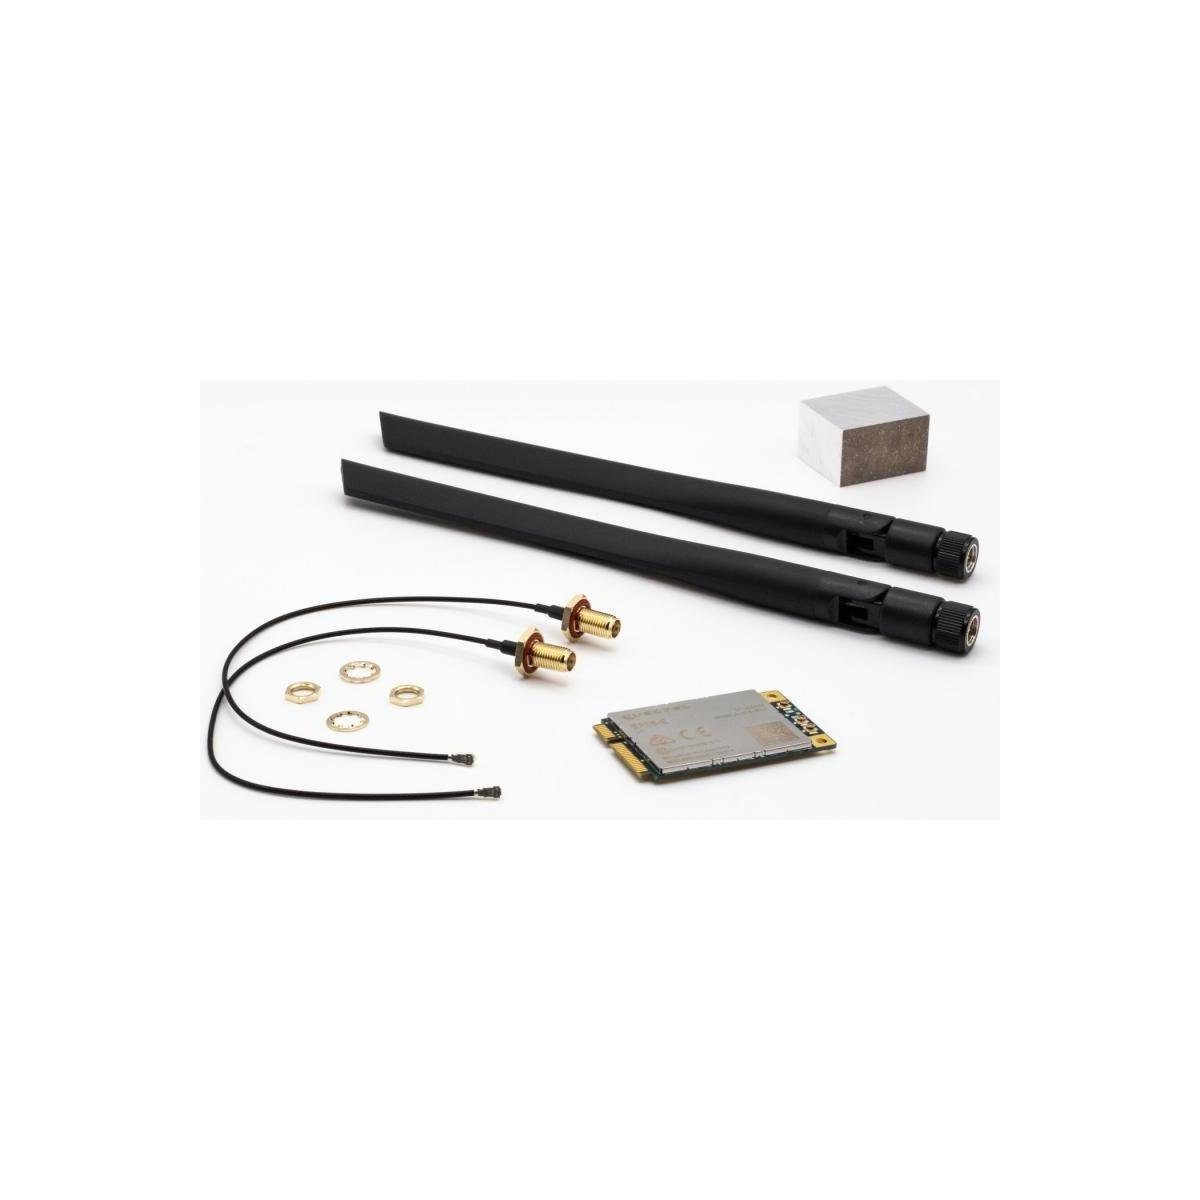 Turris Omnia RTROM01-LTE-KIT1 - LTE-Kit inkl. Modem, Kabel, Antennen,... Computer-Adapter